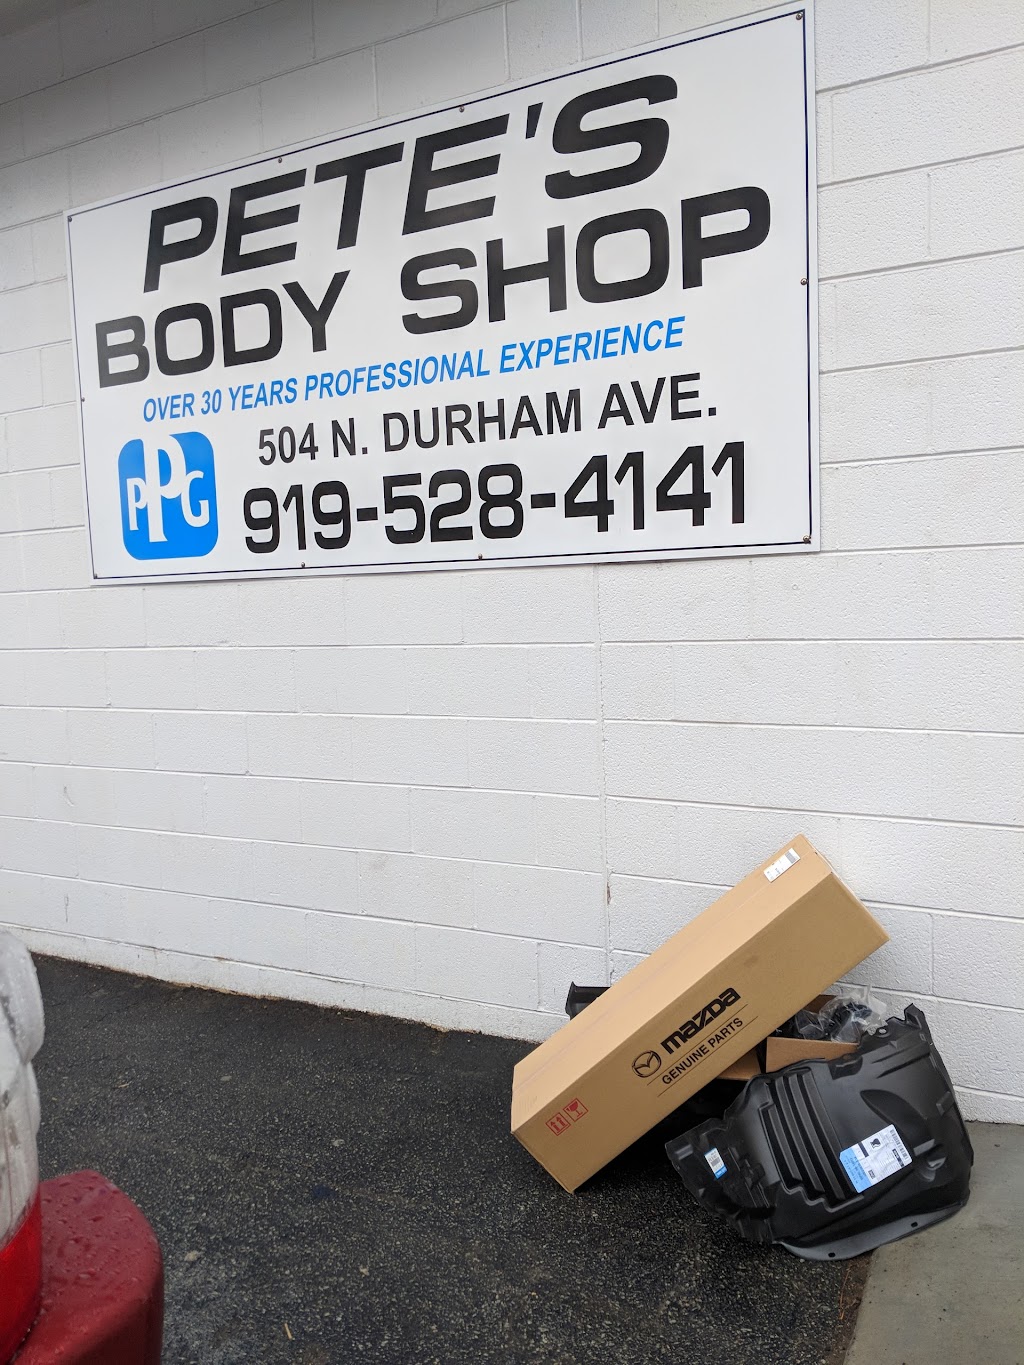 Petes Body Shop-Creedmoor Inc | 504 N Durham Ave, Creedmoor, NC 27522 | Phone: (919) 528-4141